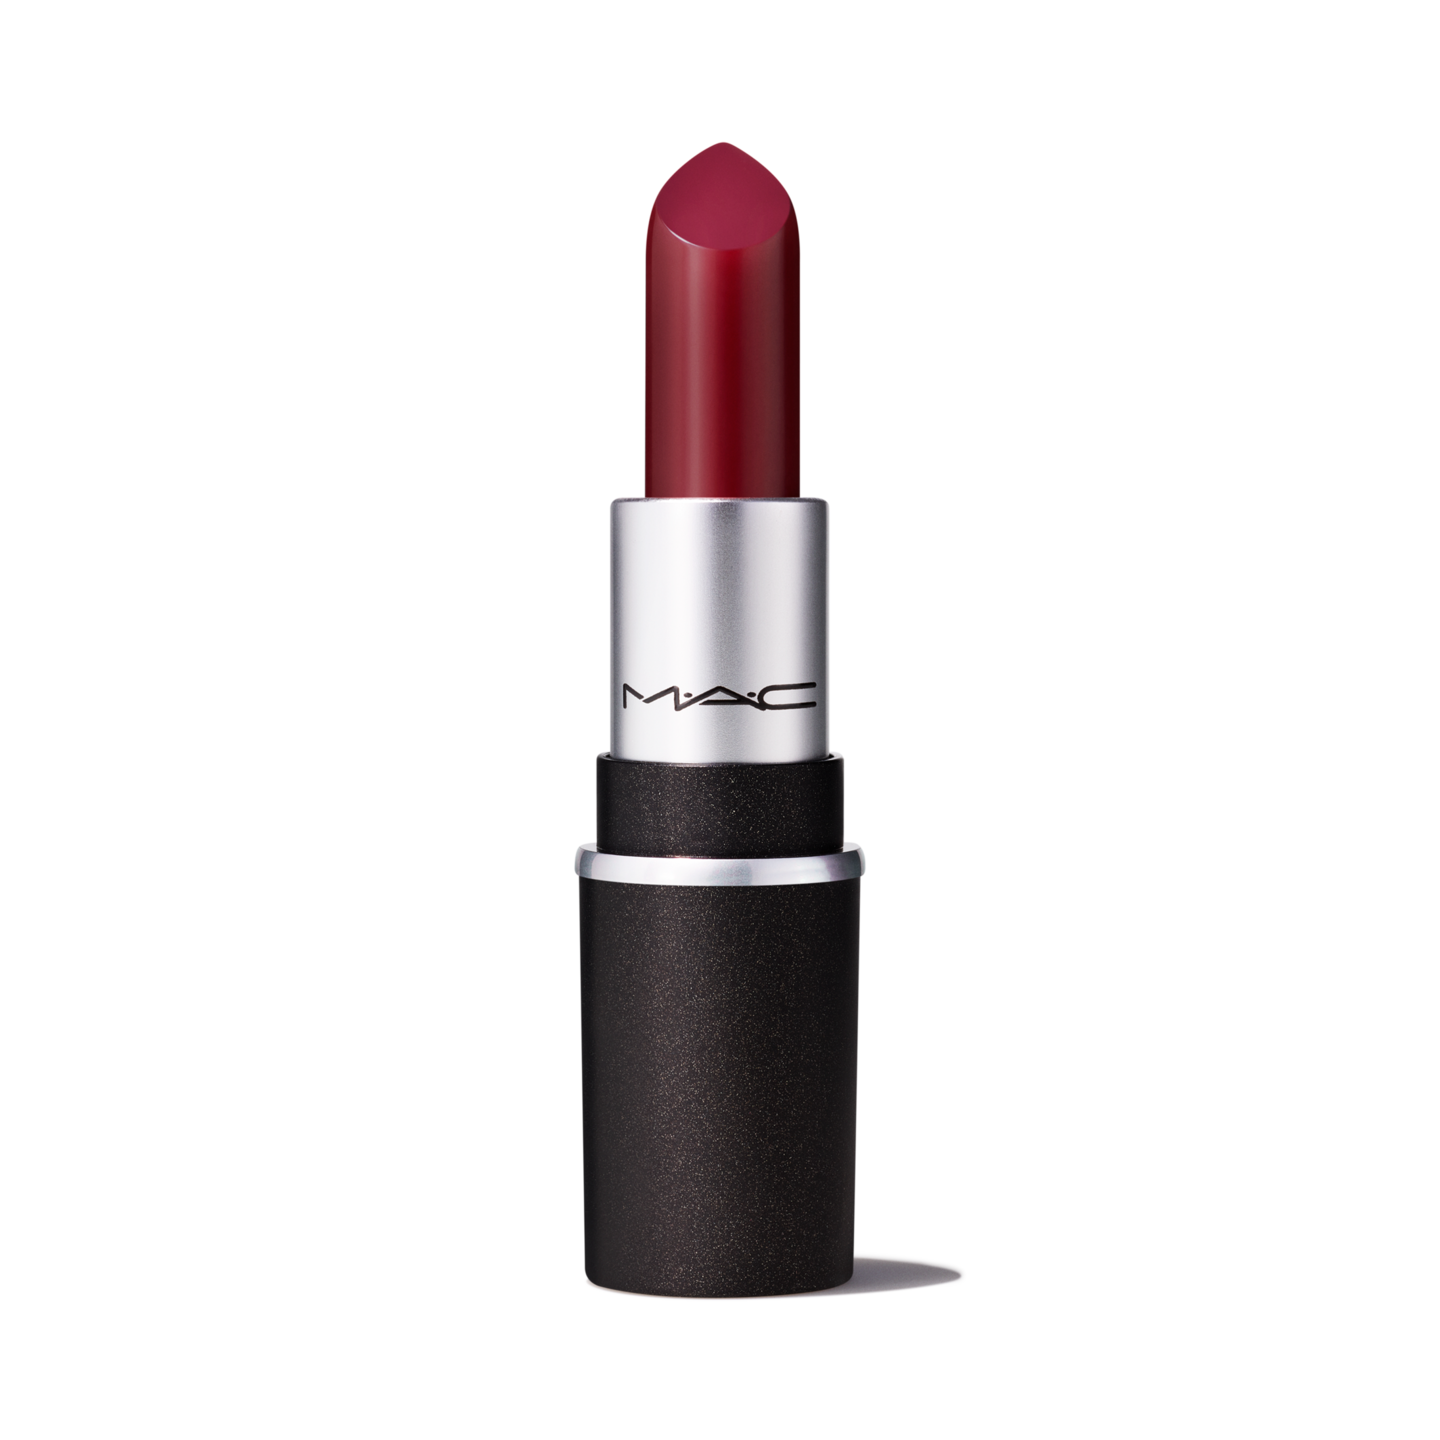 diva lipstick mac